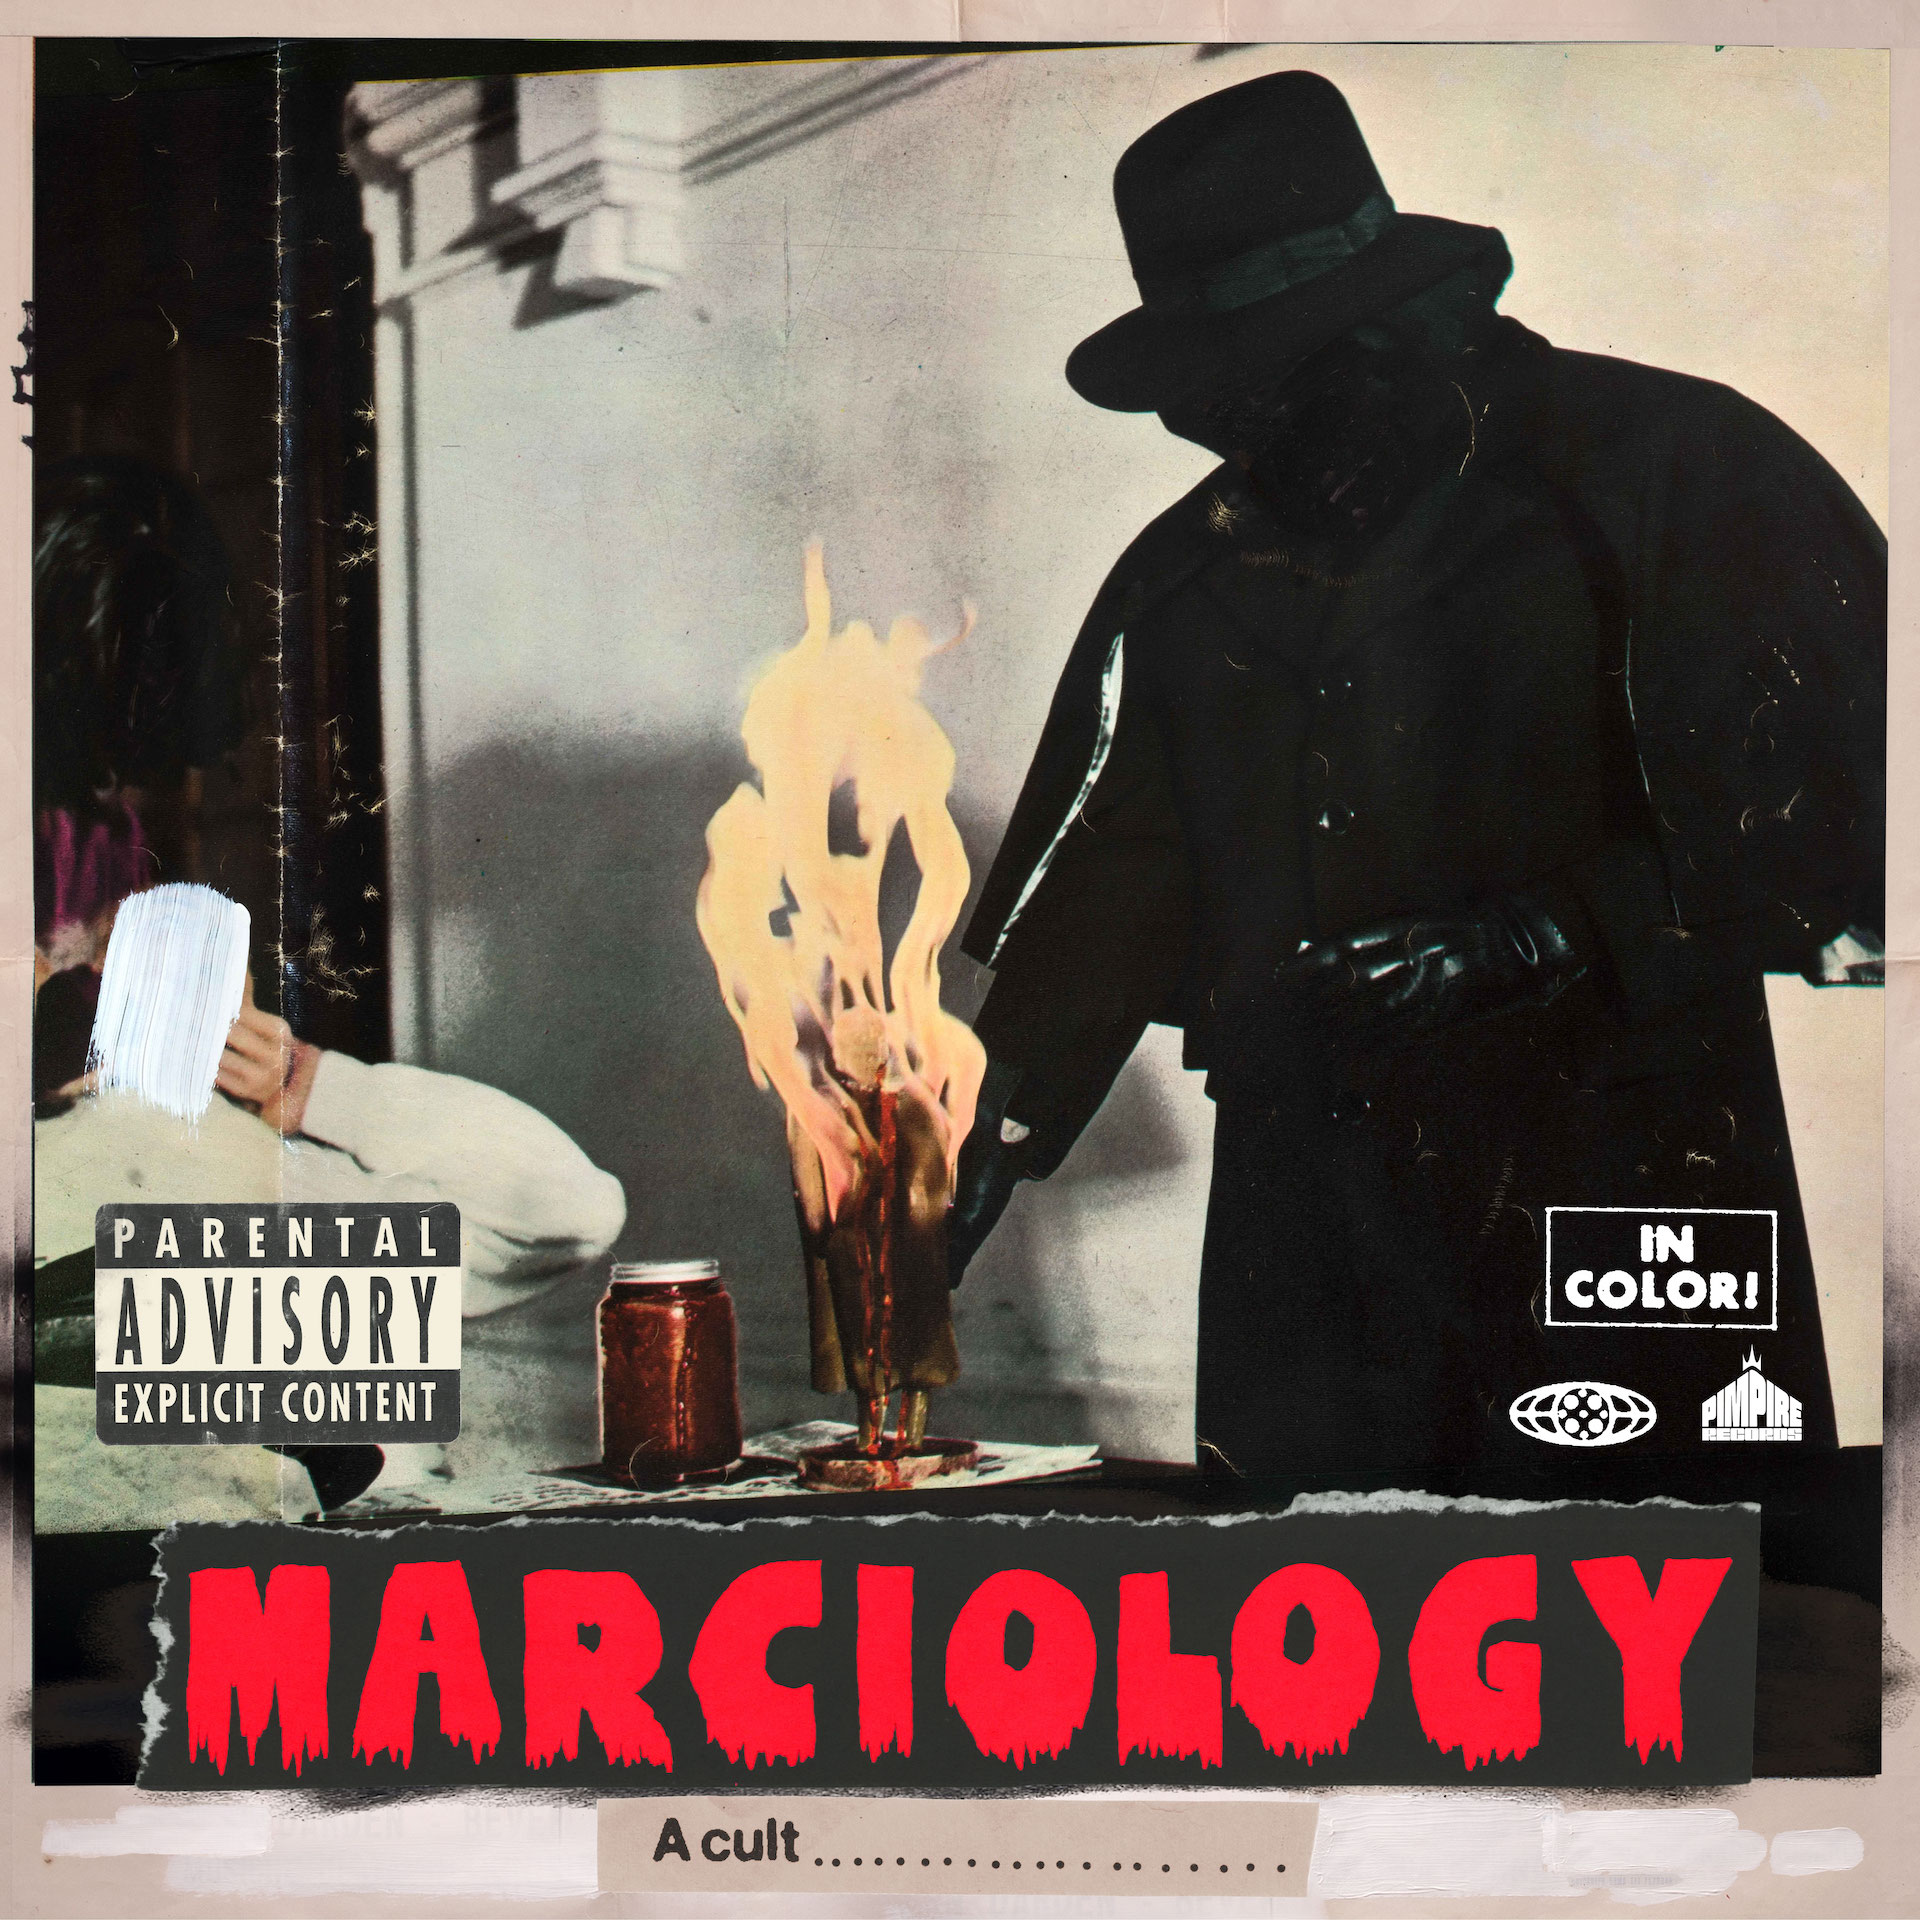 Roc Marciano Drops 'Marciology' Album